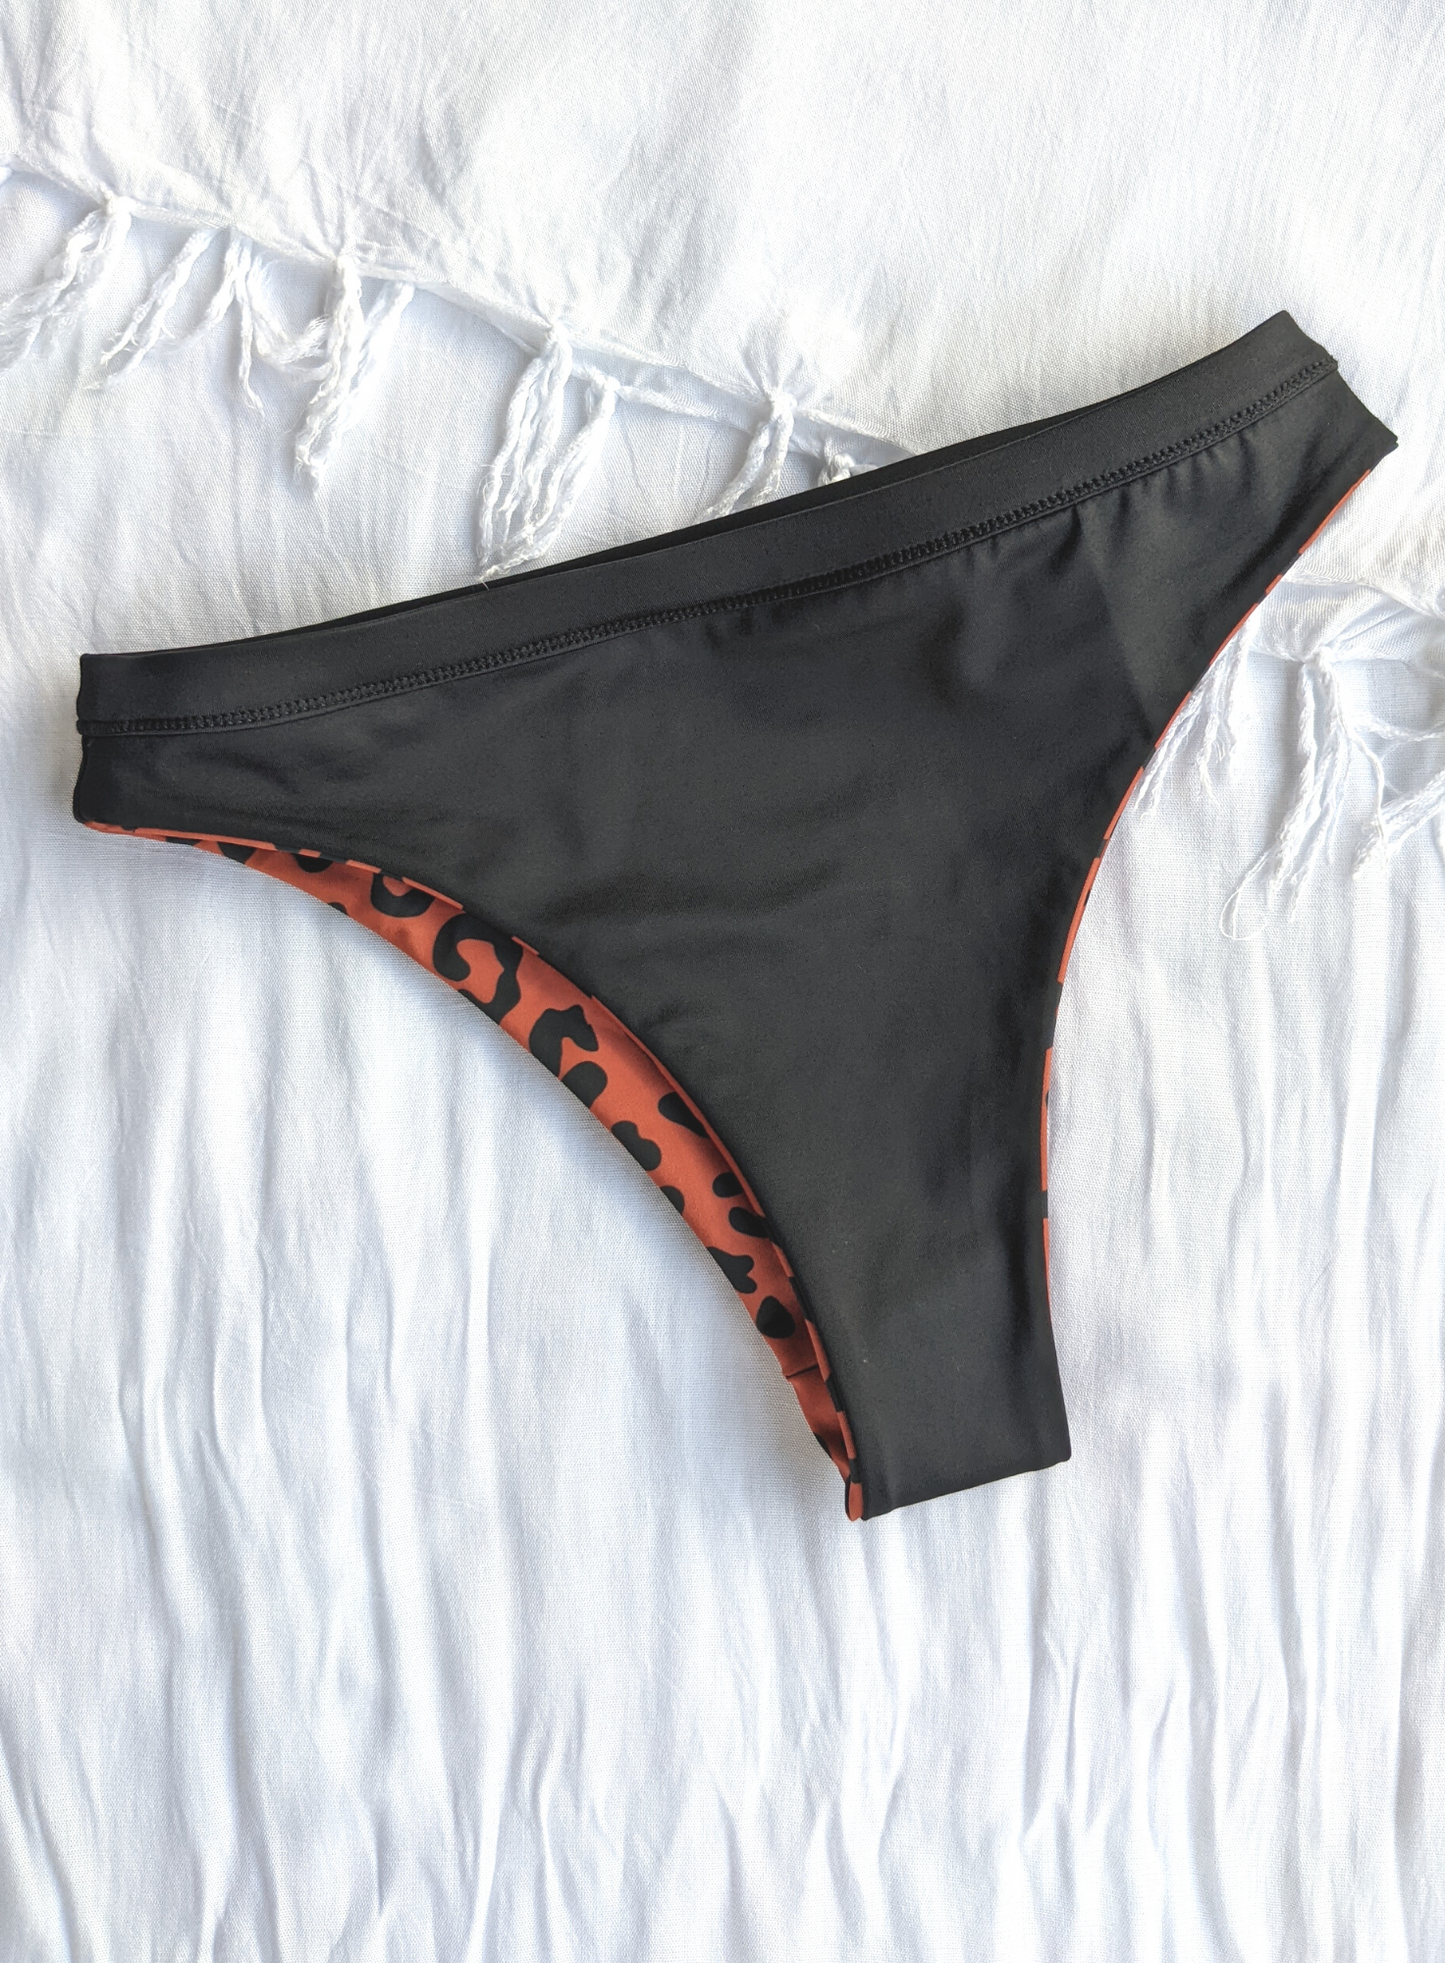 Eco Friendly Reversible Cheeky High Cut bikini In Black And Leopard Print